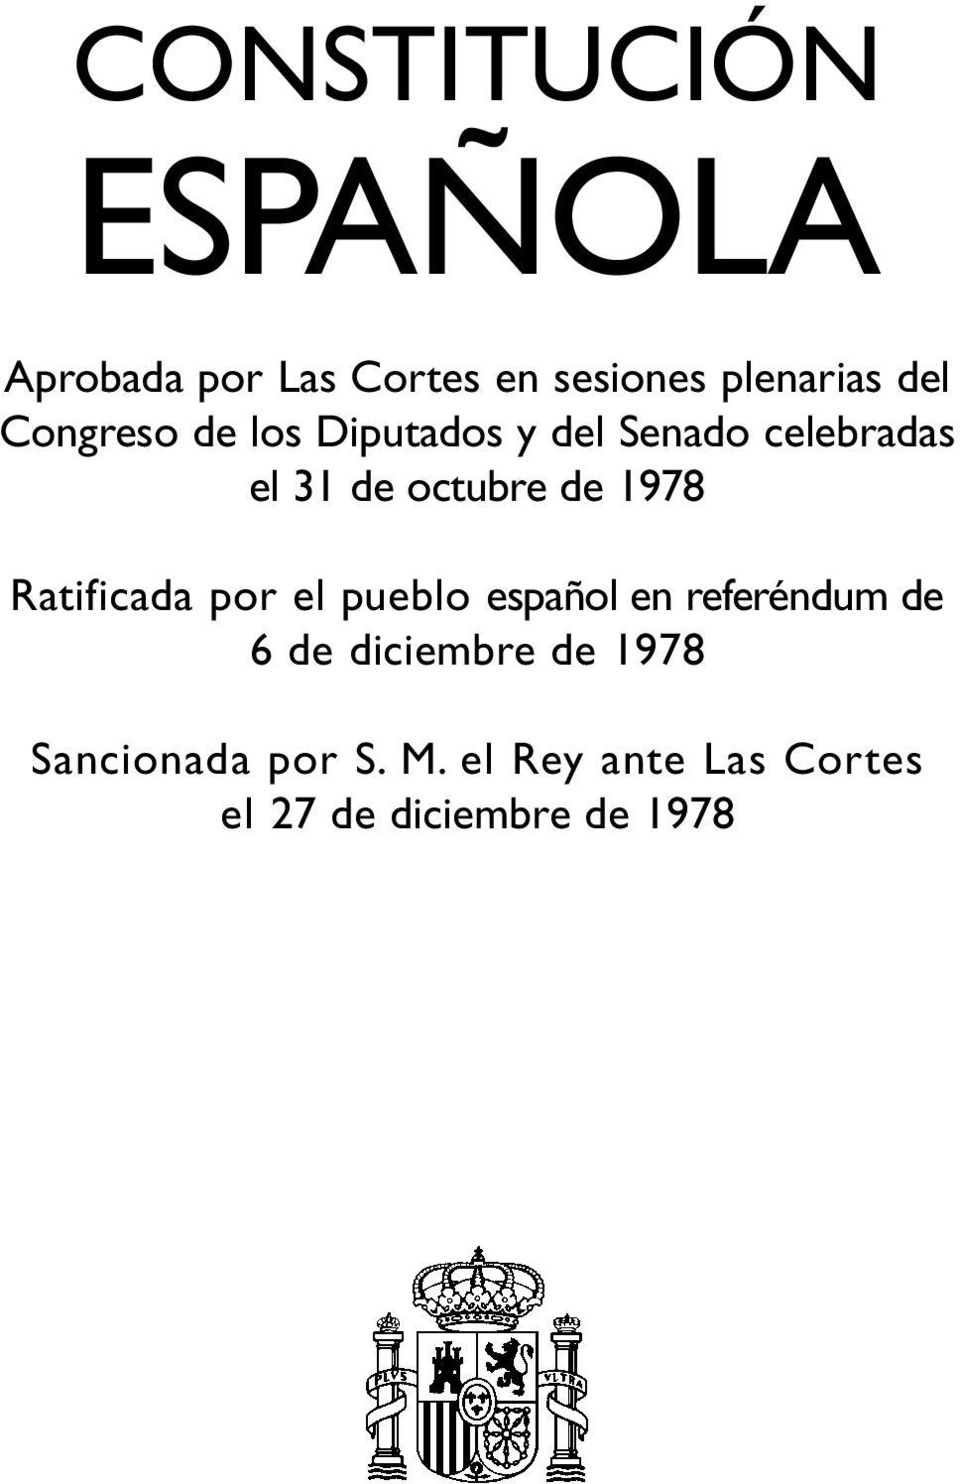 1978 Ratificada por el pueblo español en referéndum de 6 de diciembre de